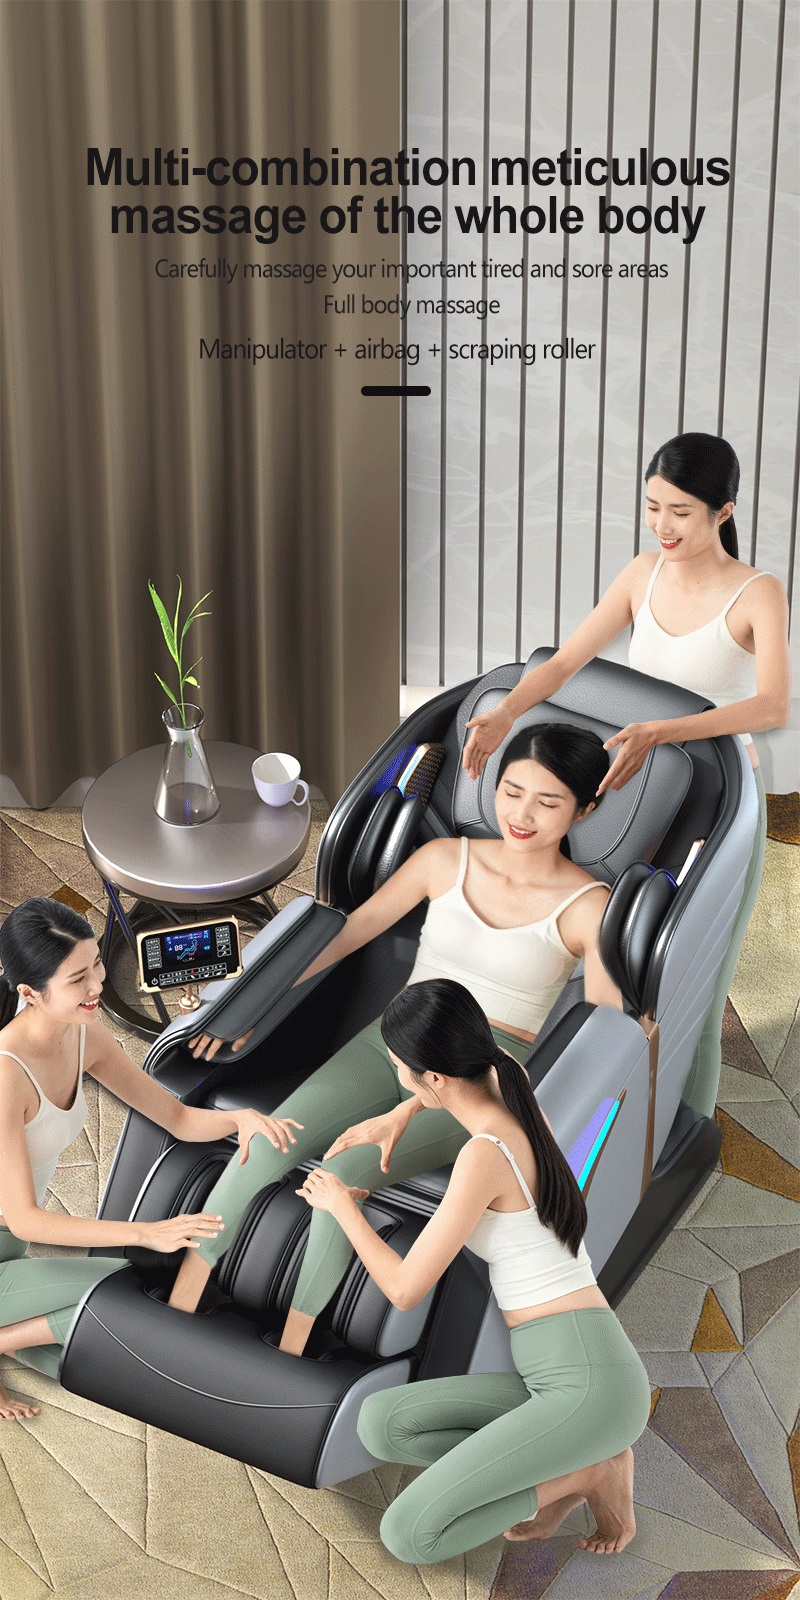 Nouveau manipulateur électrique 2D SL piste zéro gravité masseur complet du corps chaise Airbag pression pétrissage chaleur relaxant masseur chaise